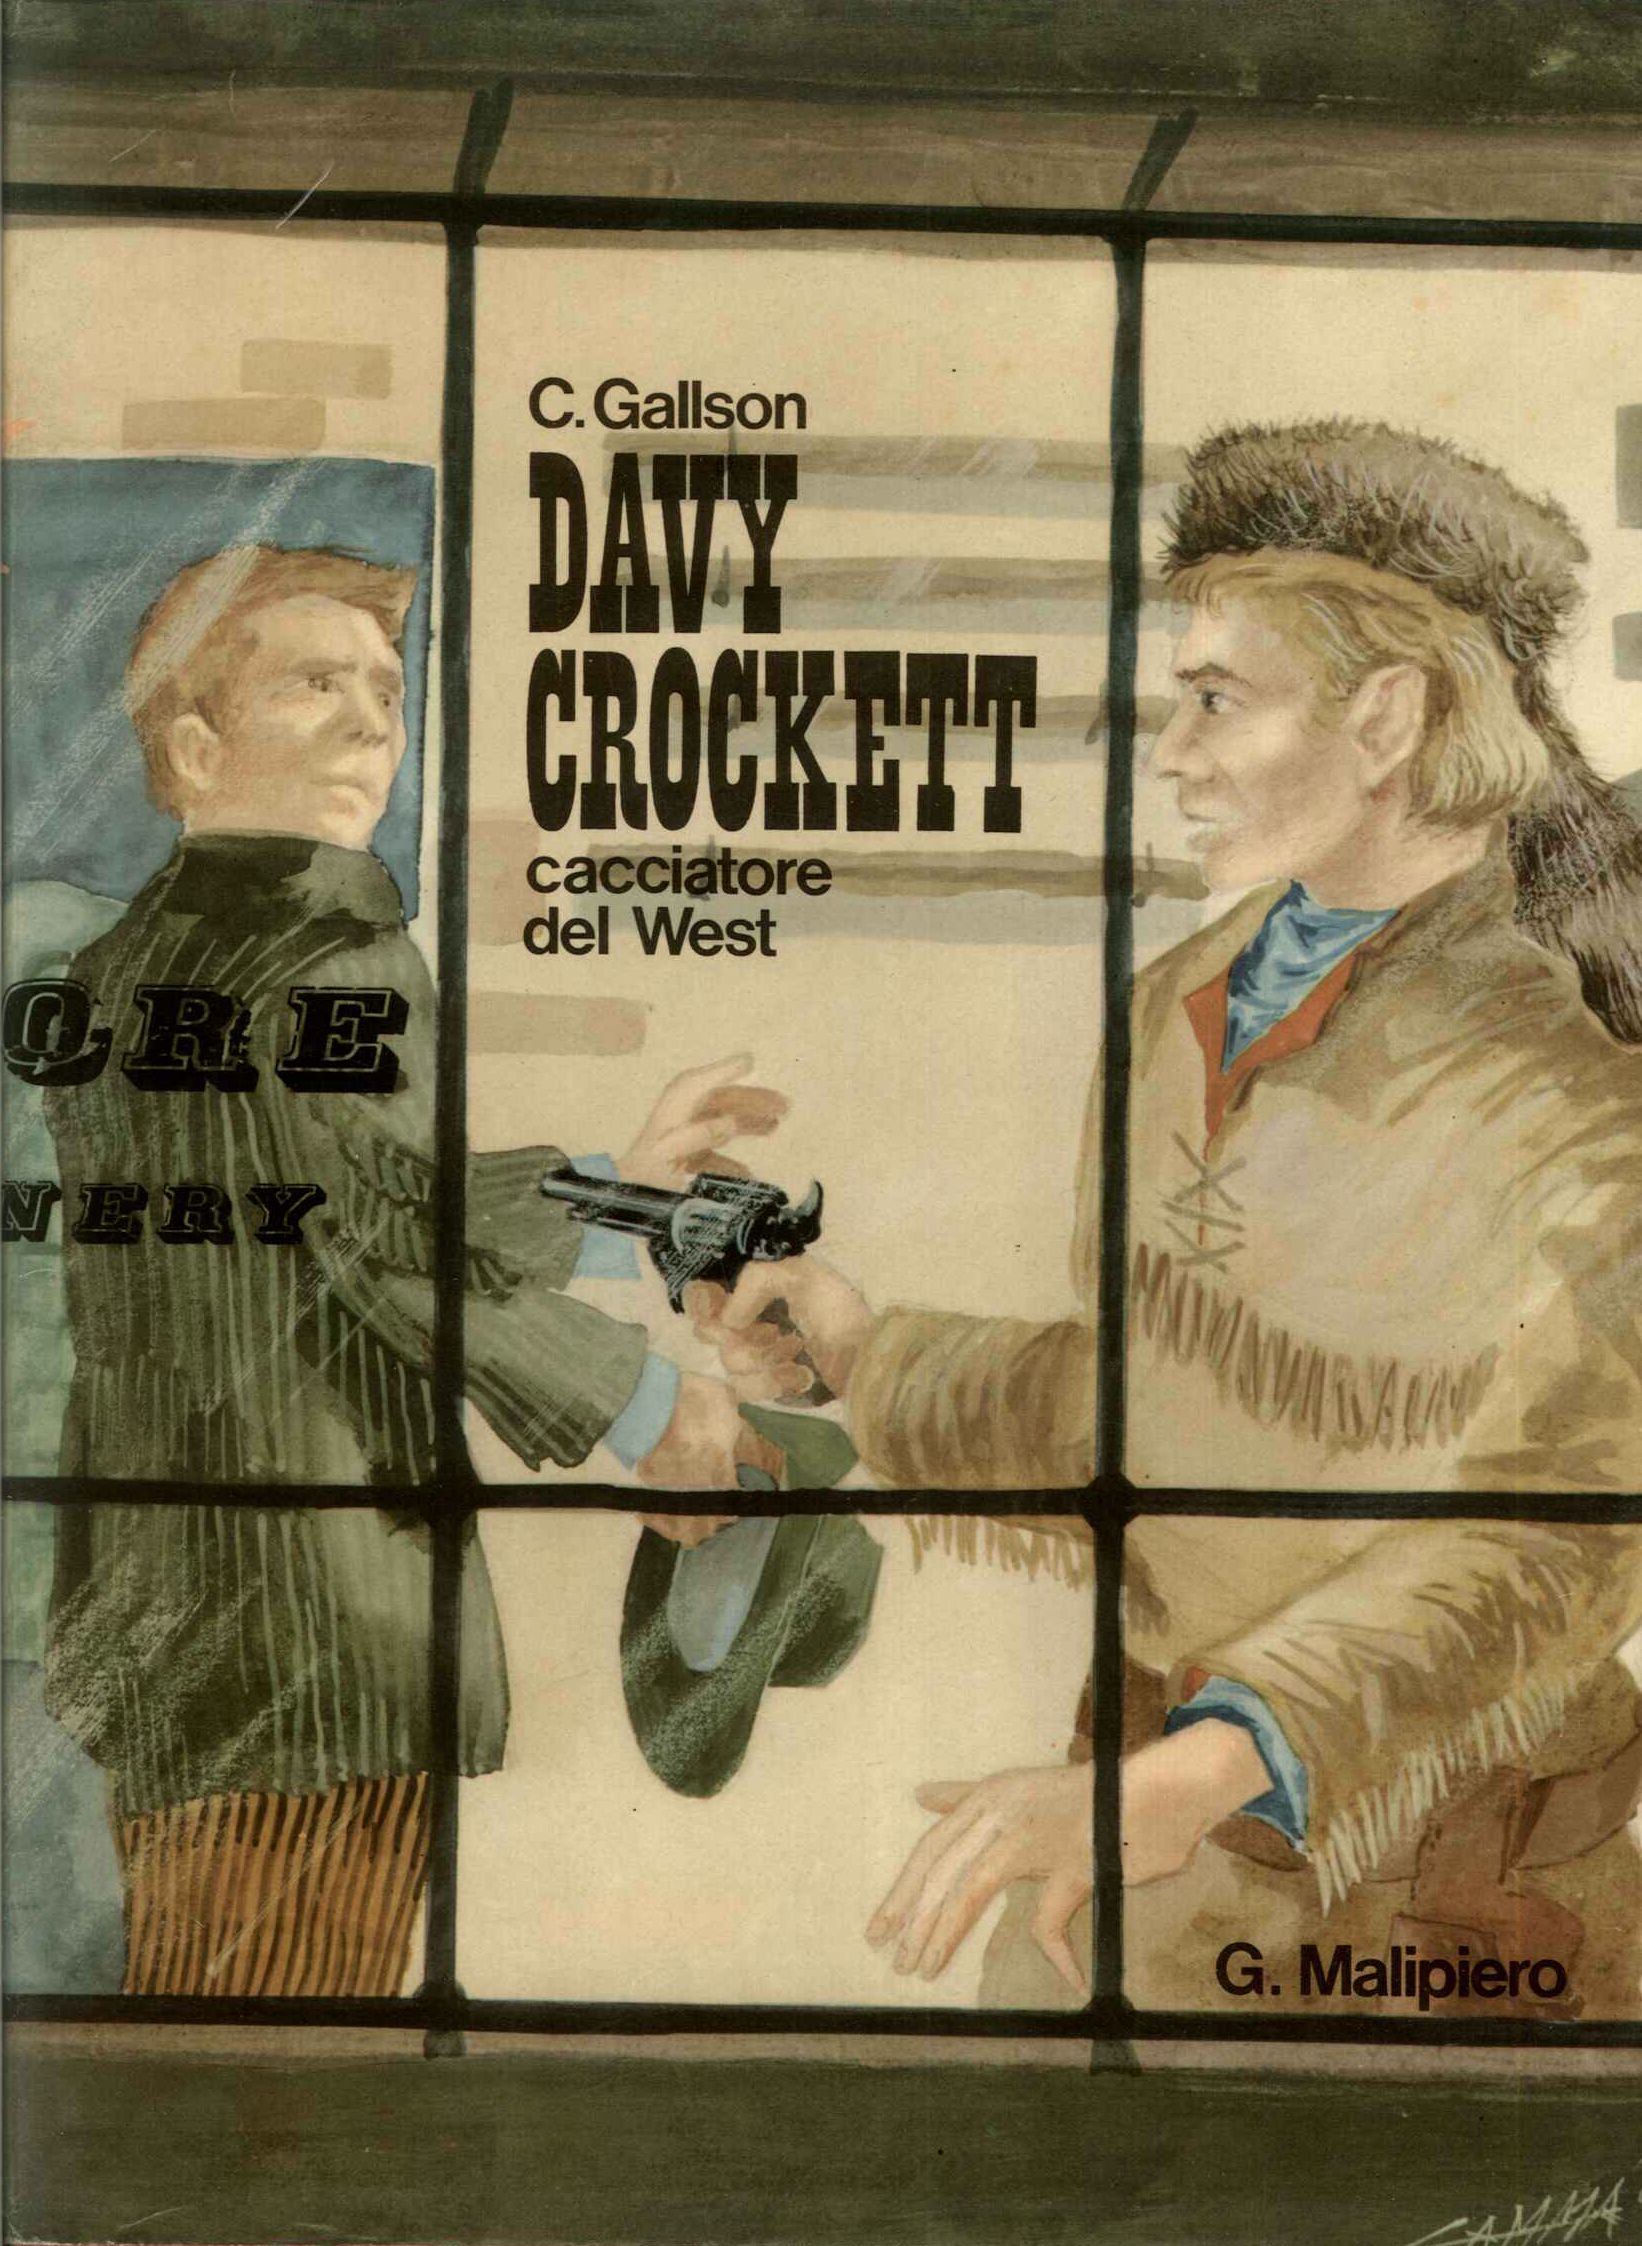 Davy Crockett cacciatore del west